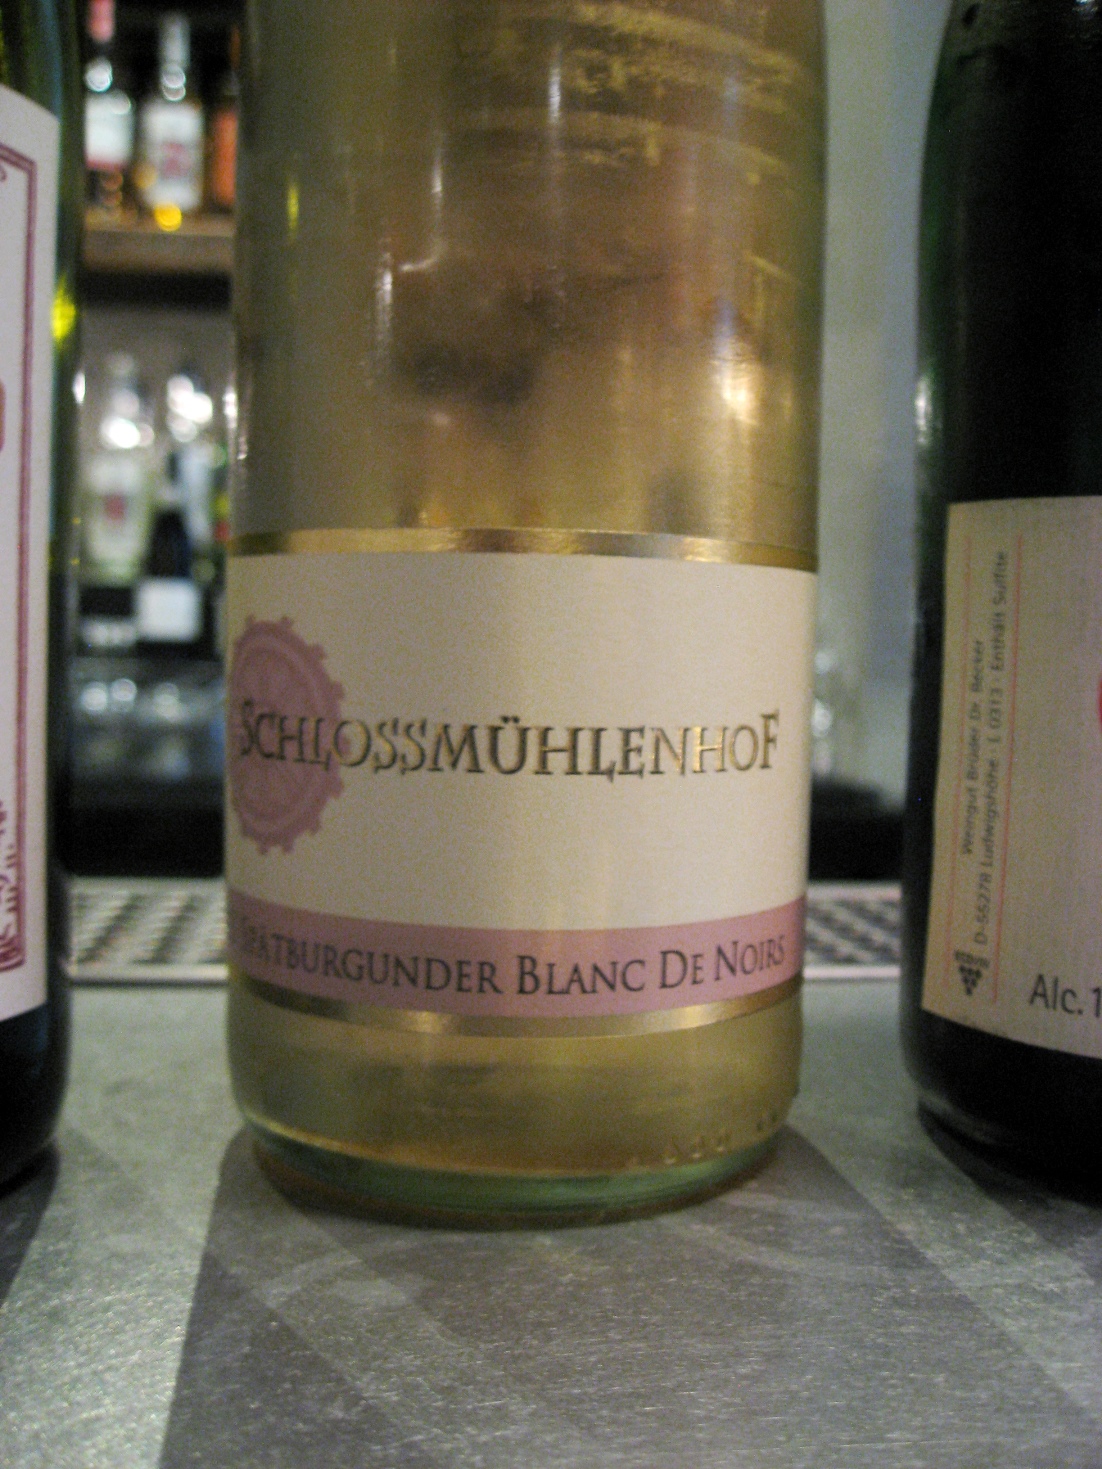 Schlossmühlenhof, Spätburgunder Trocken, “Blanc de Noirs” Rosé 2013, Rheinhessen, Germany, Wine Casual